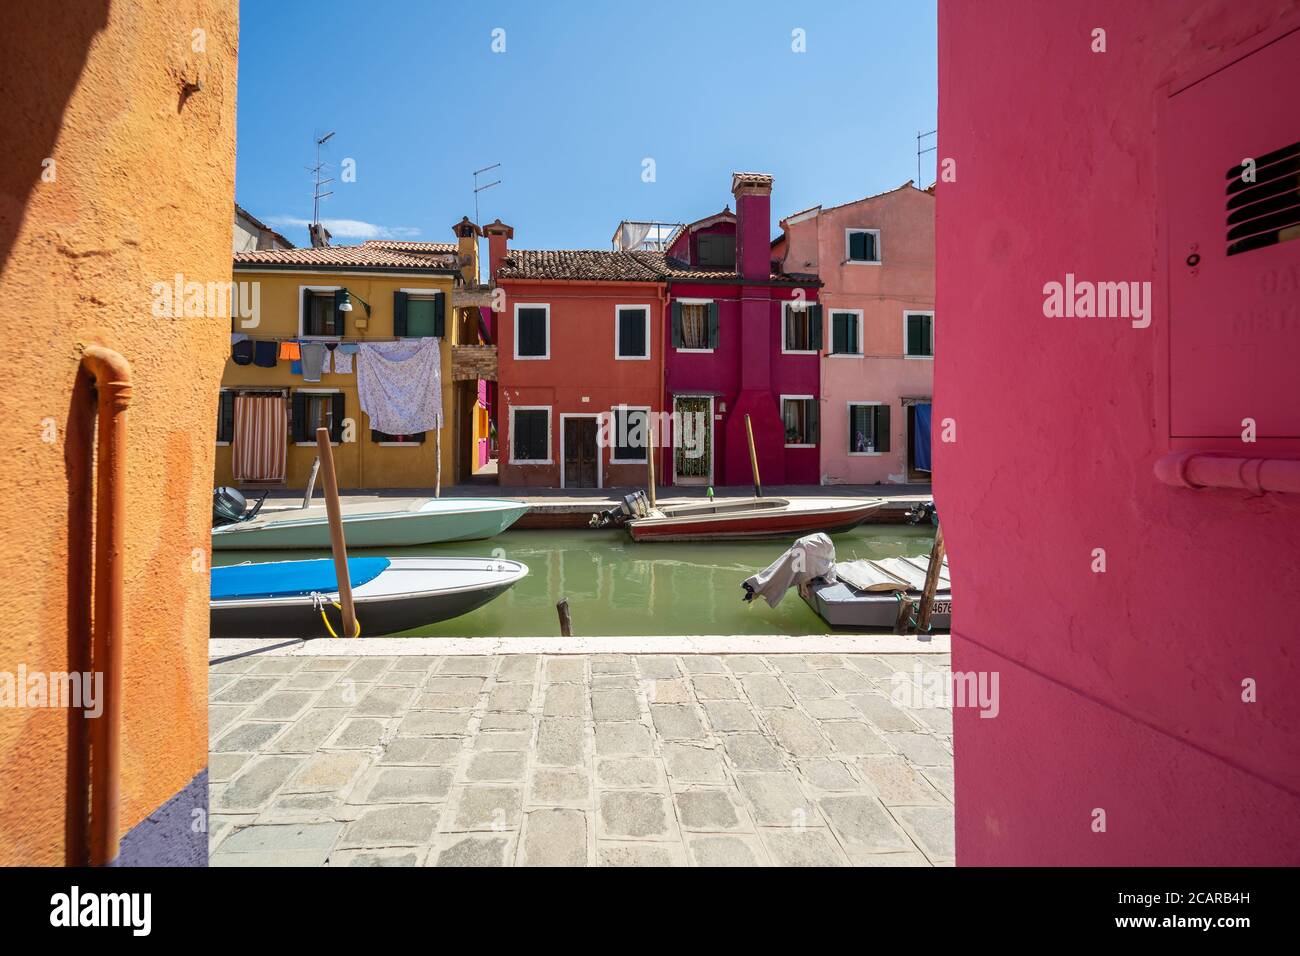 Isola di Burano, Laguna Veneziana, Venezia, Italia, panorama con le tipiche case colorate che si affacciano su un canale nel centro della città Foto Stock